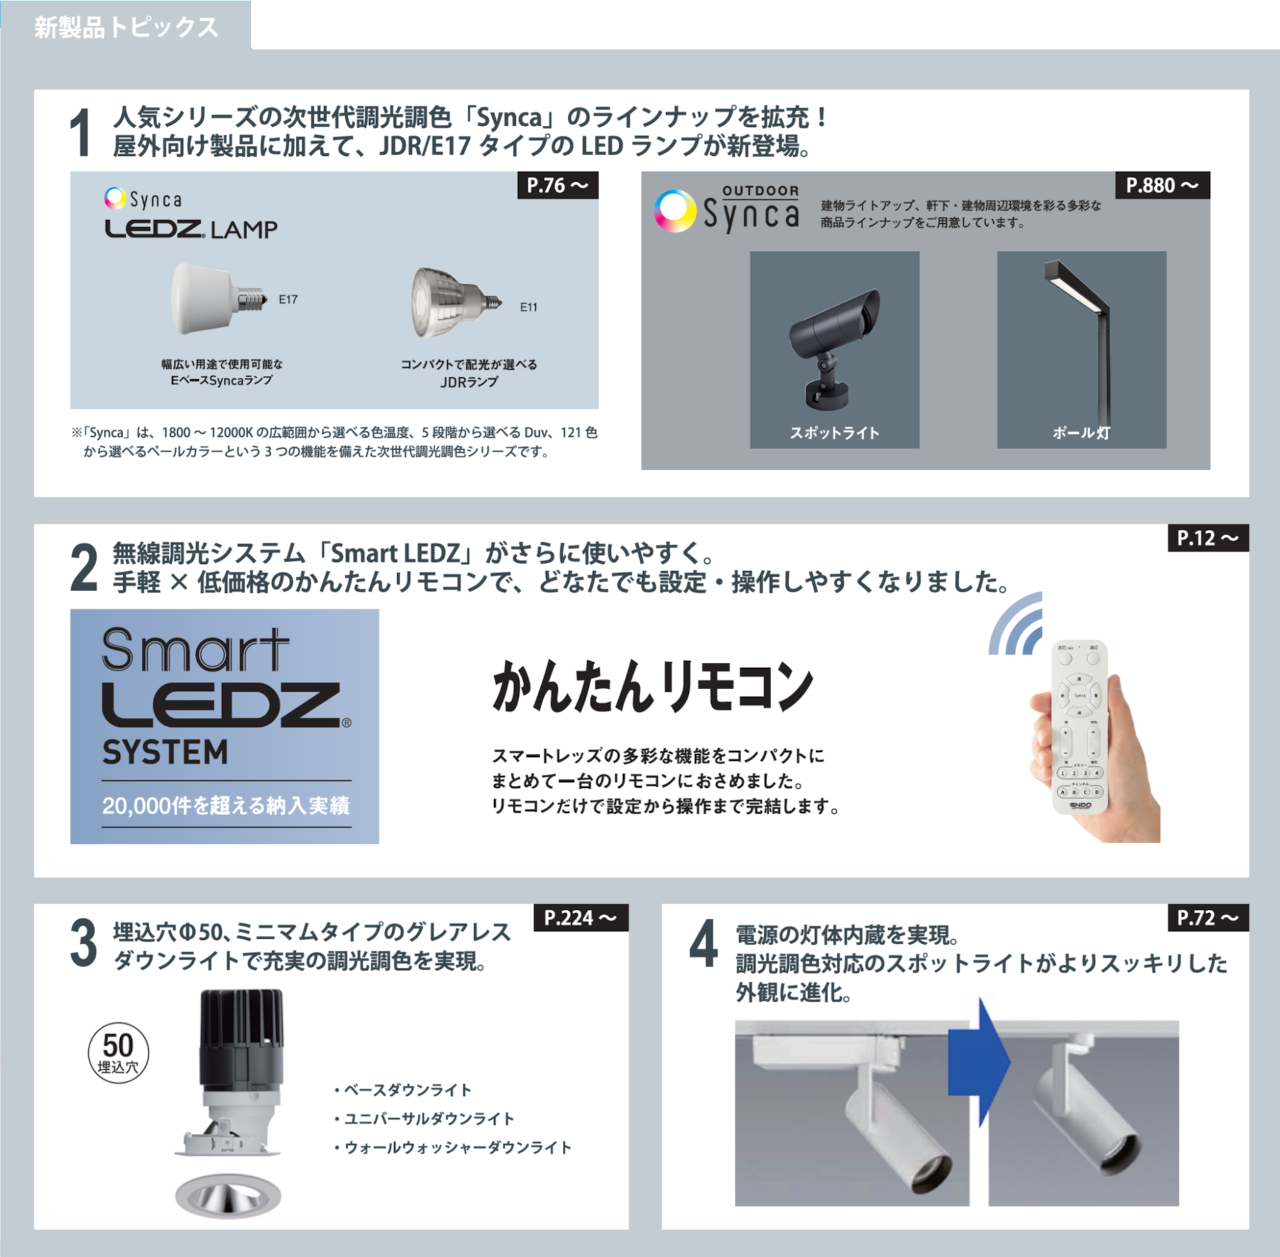 新・総合カタログ「LEDZ Pro.5」新製品トピックス